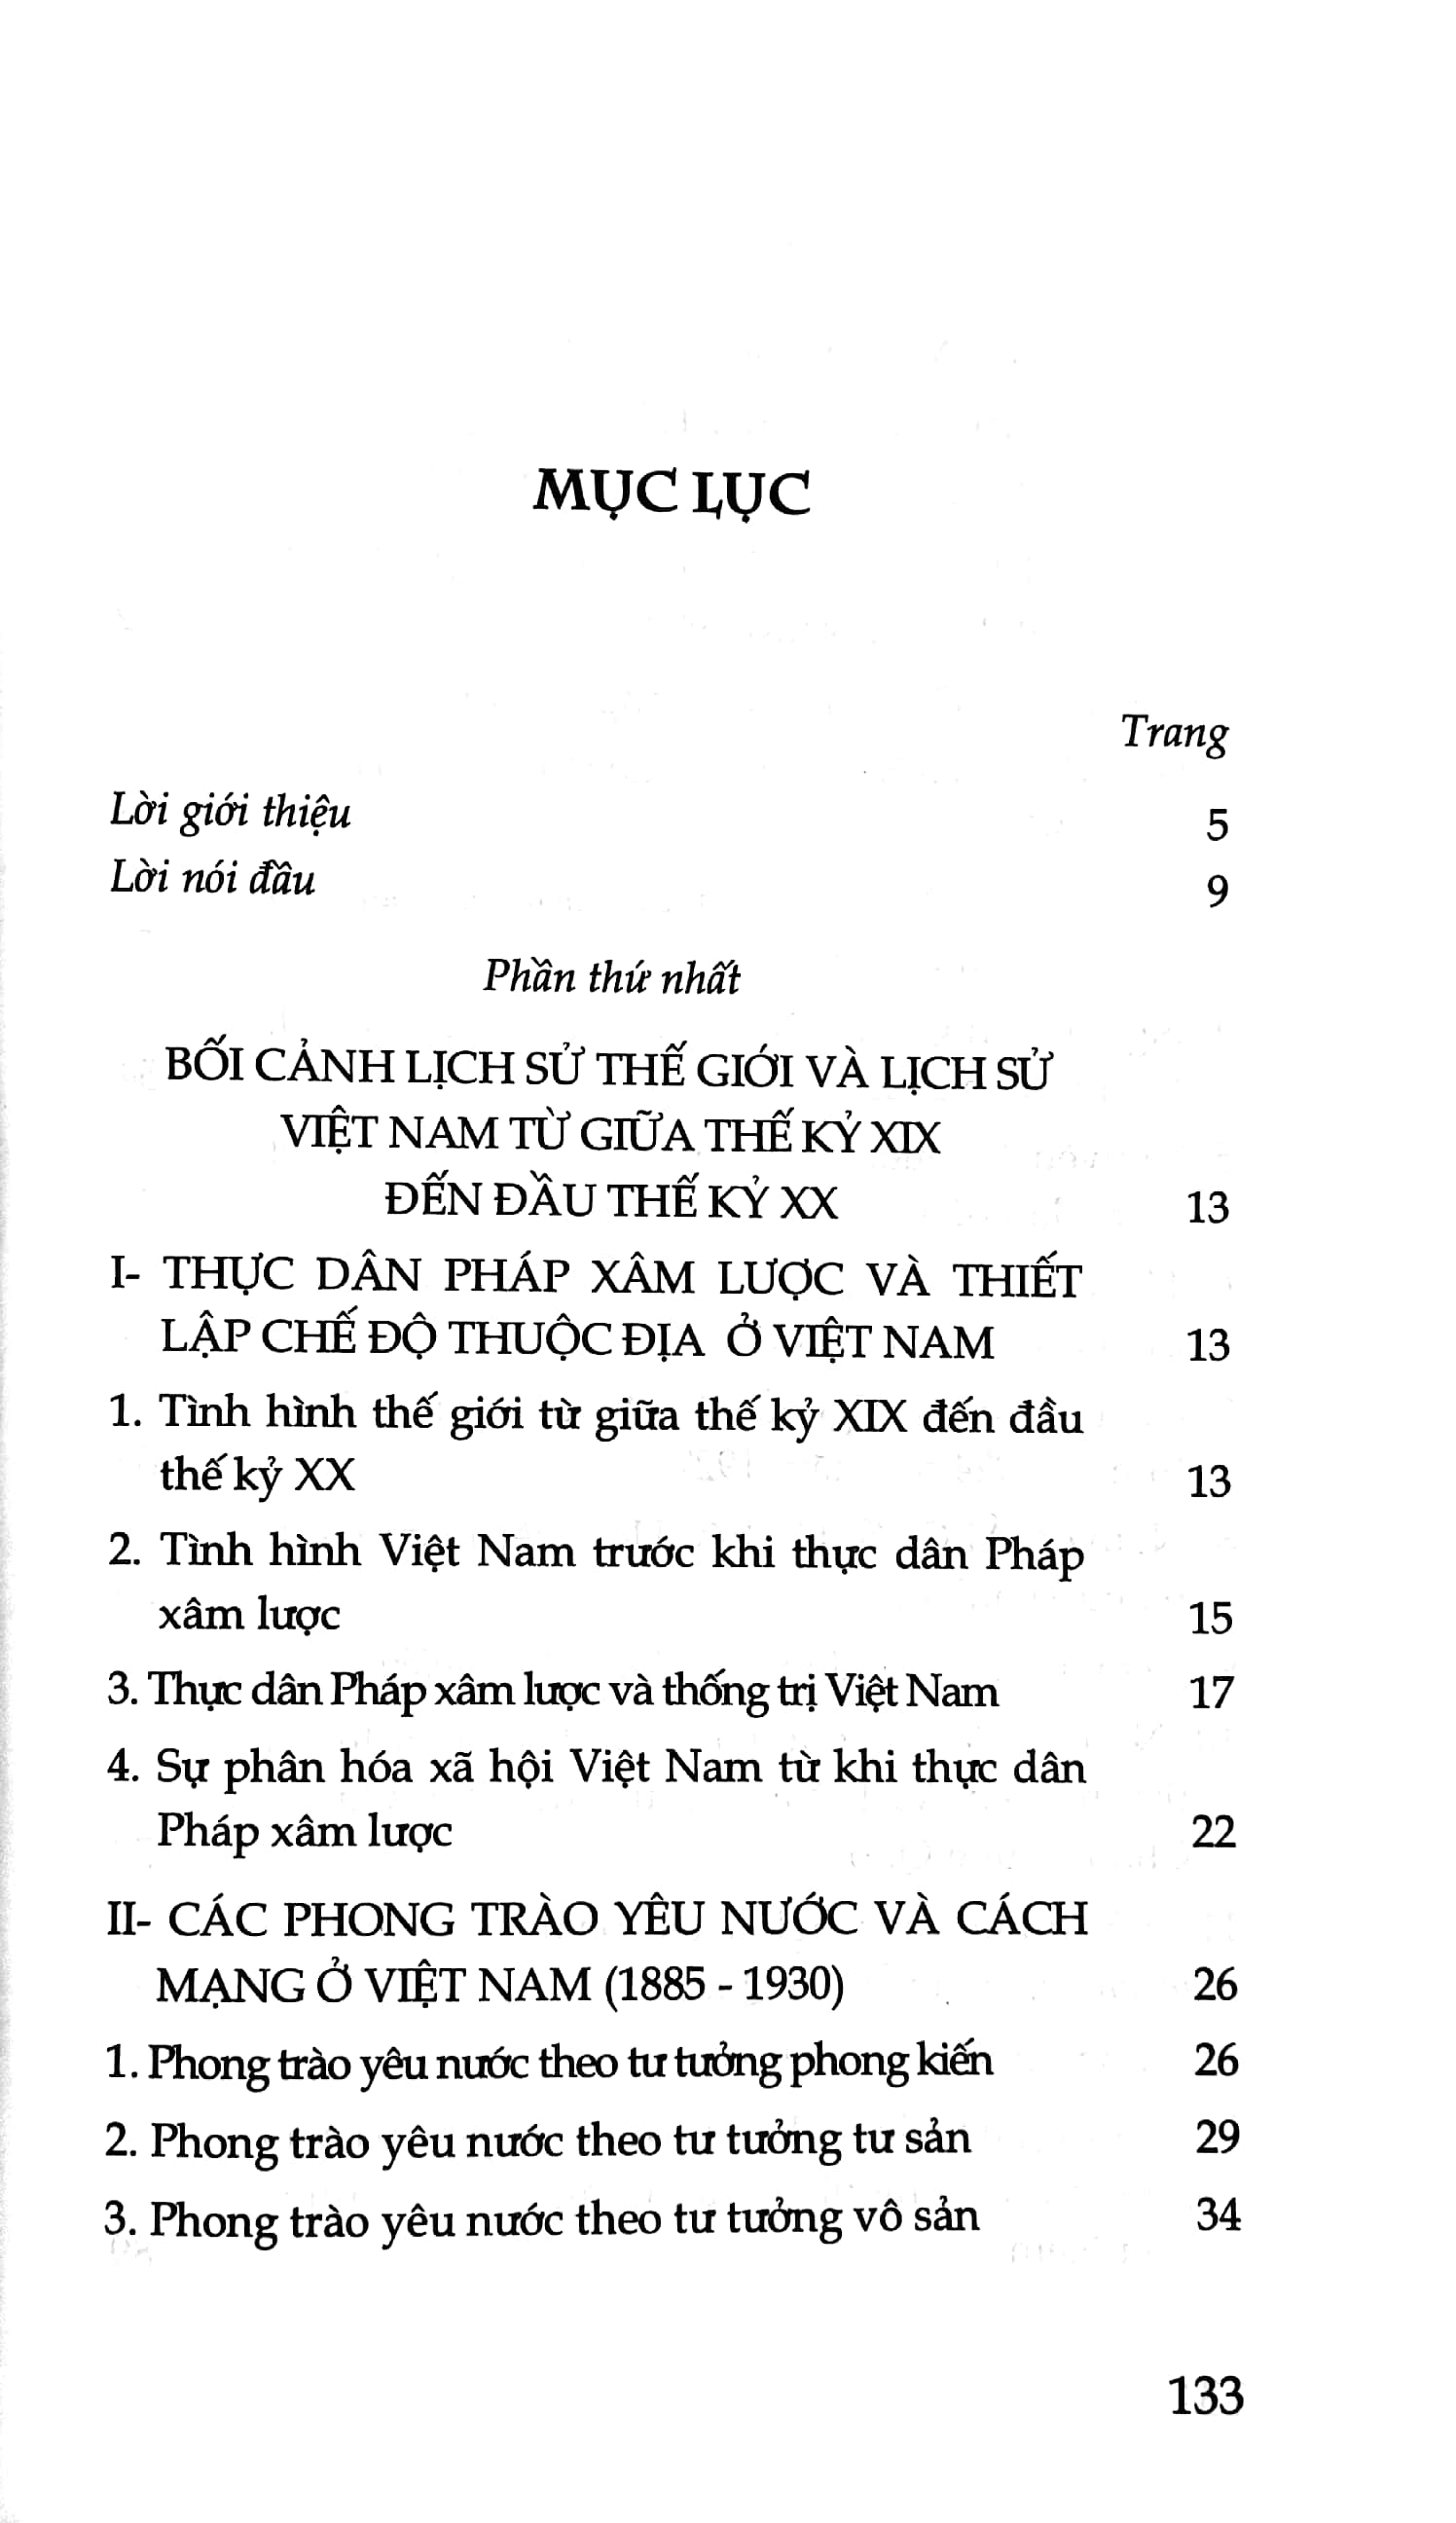 Thường Thức Về Lịch Sử Đảng Cộng Sản Việt Nam - Quyển 1: Đảng Cộng Sản Việt Nam Ra Đời PDF